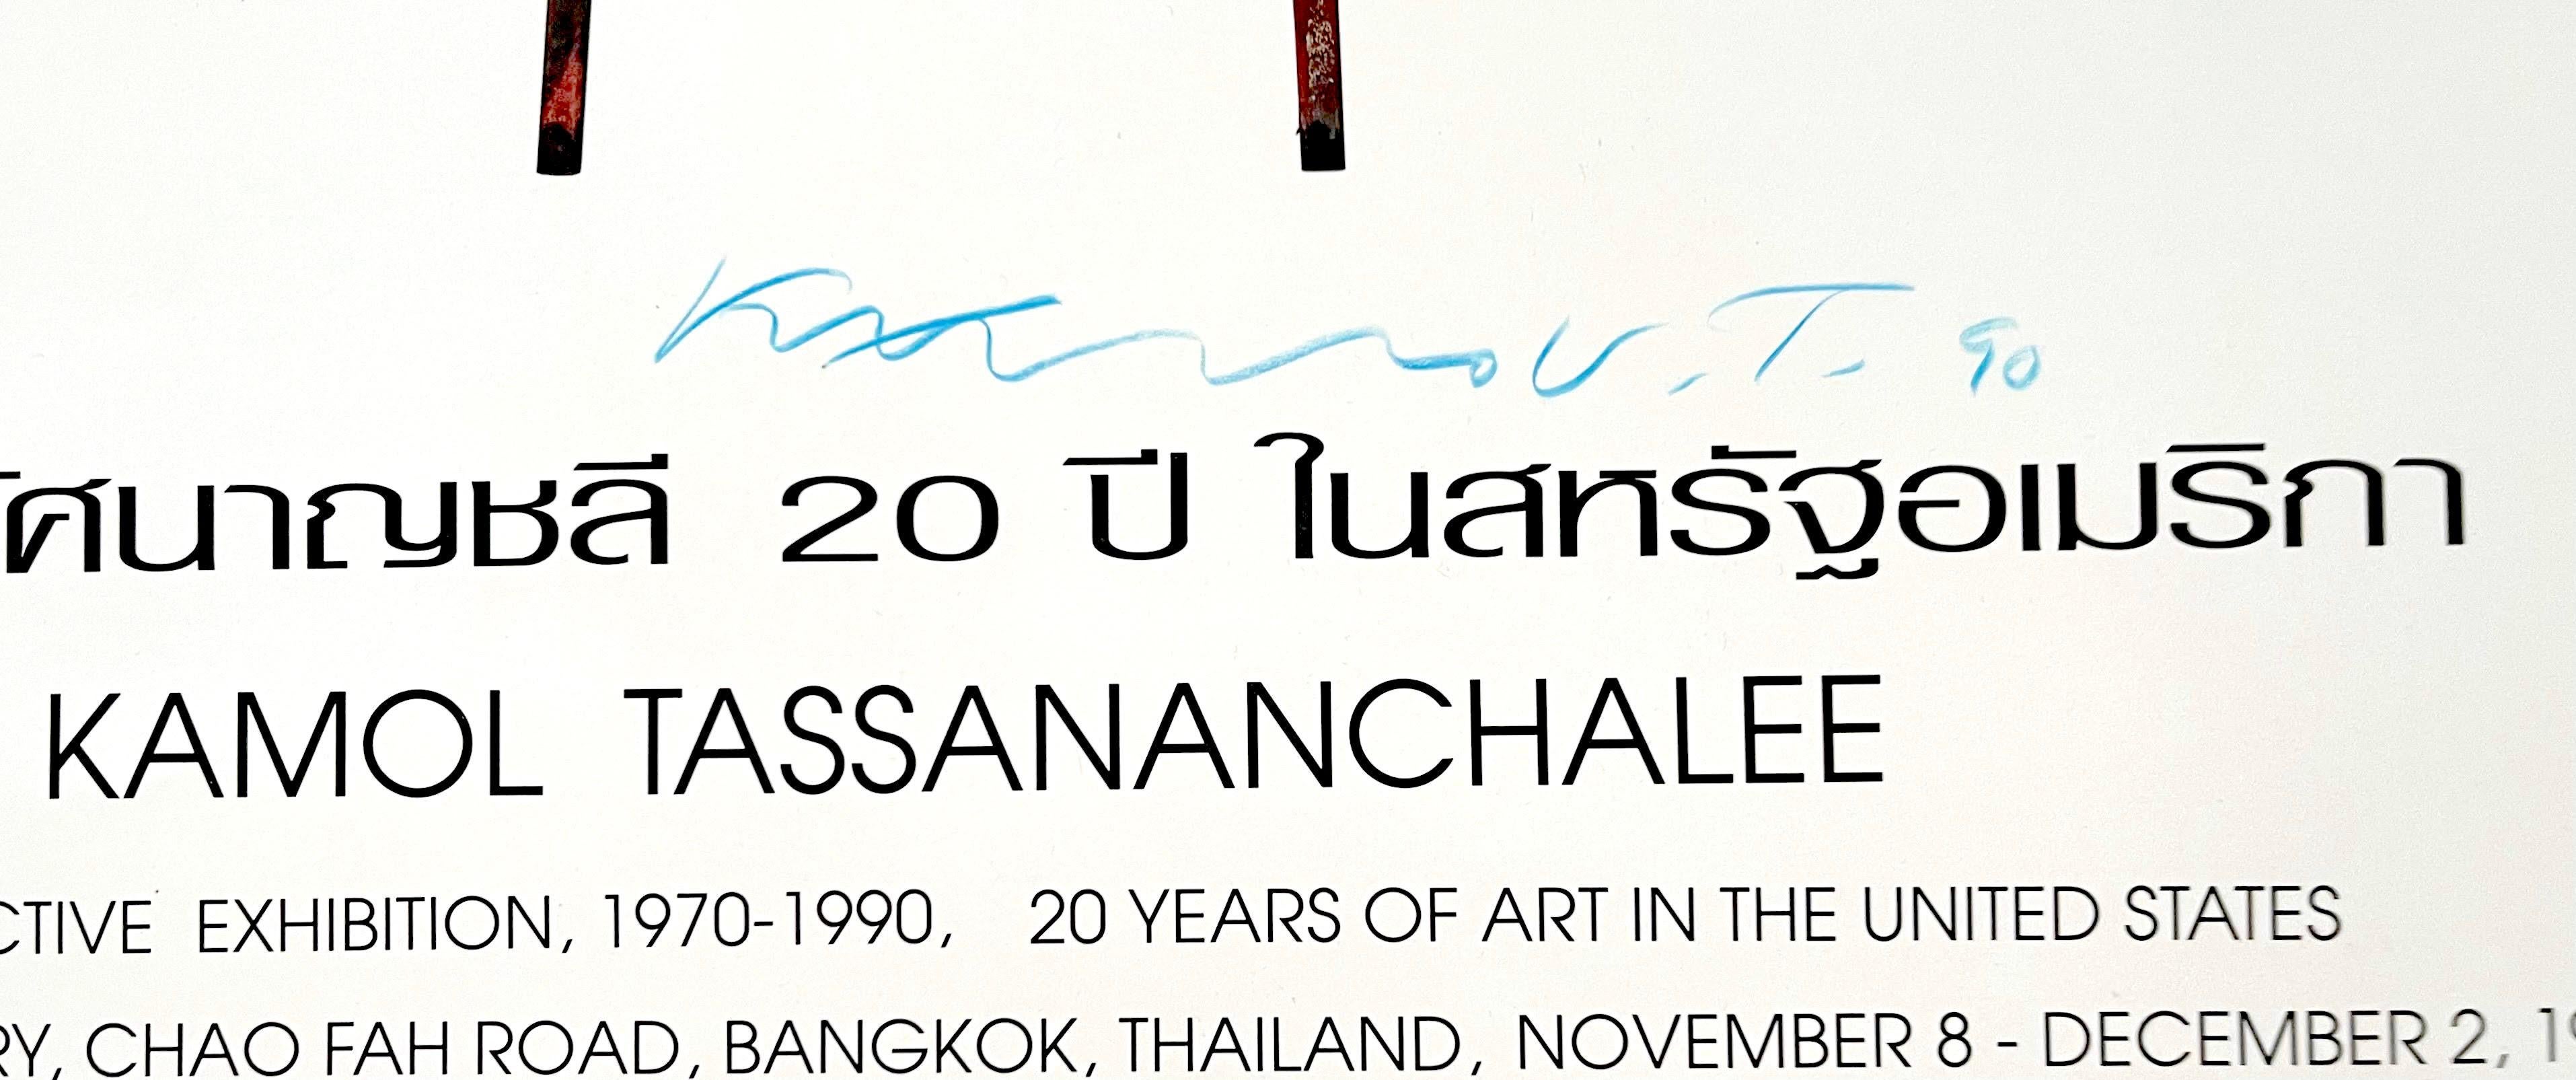 Retrospektive Ausstellungsplakat, Nationalgalerie, Thailand (Hand signiert) (Abstrakt), Print, von Kamol Tassananchalee